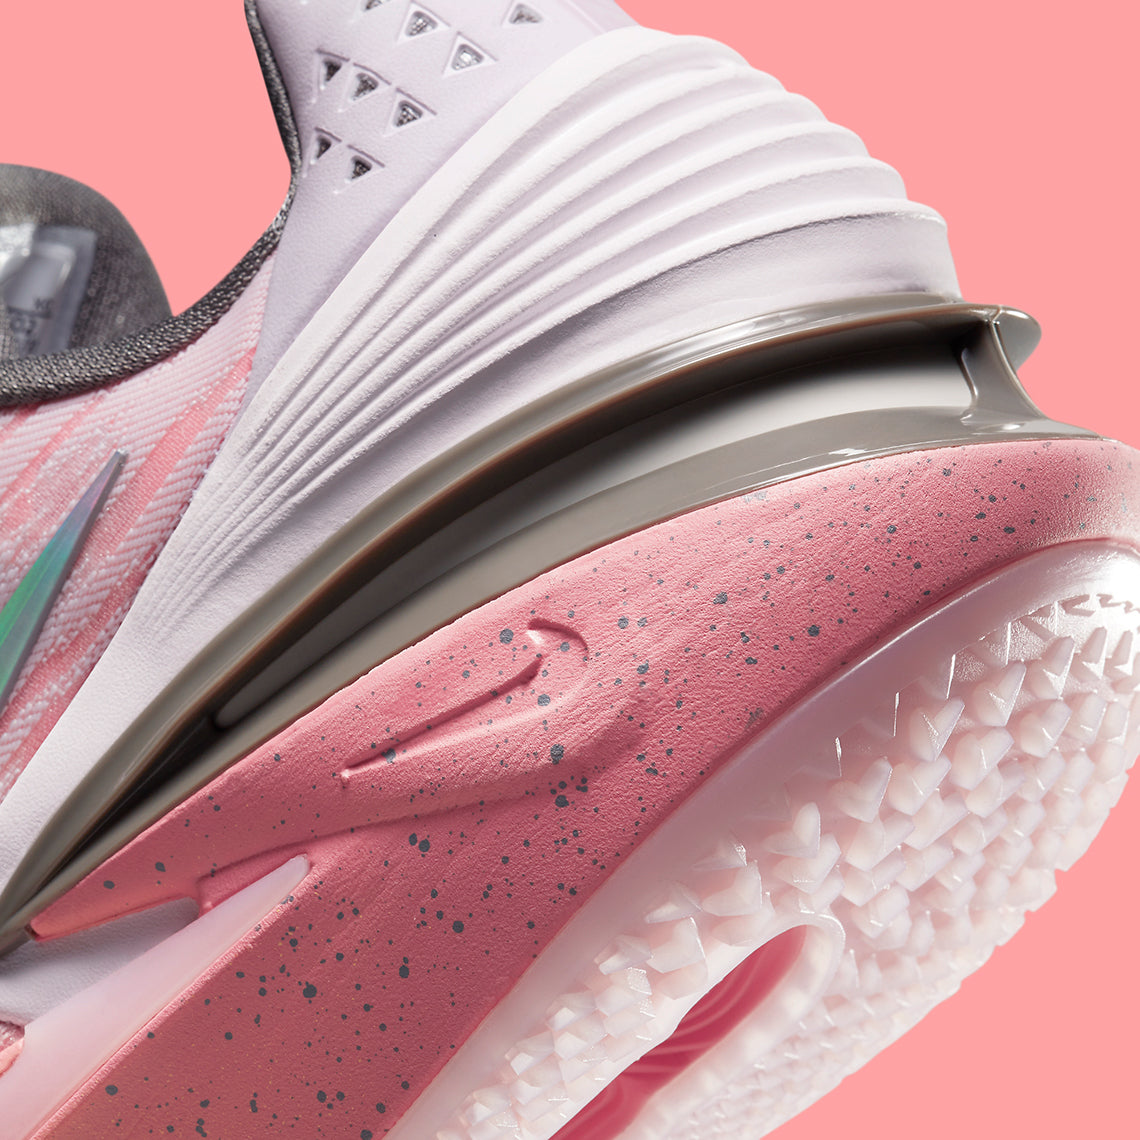 Nike Zoom GT Cut 2 “Pearl Pink”